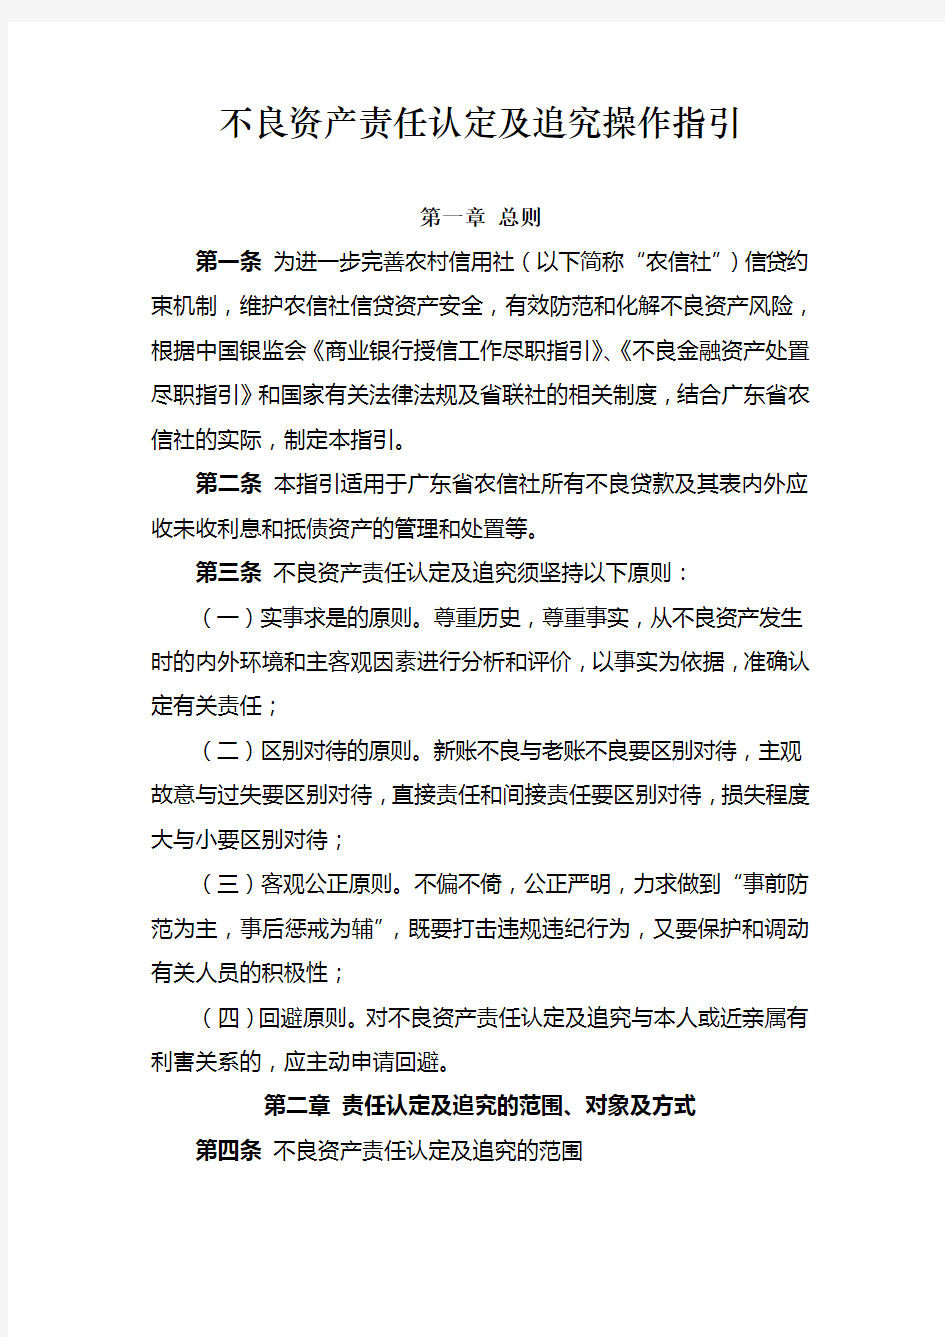 广东省农信社不良资产责任认定及追究操作指引